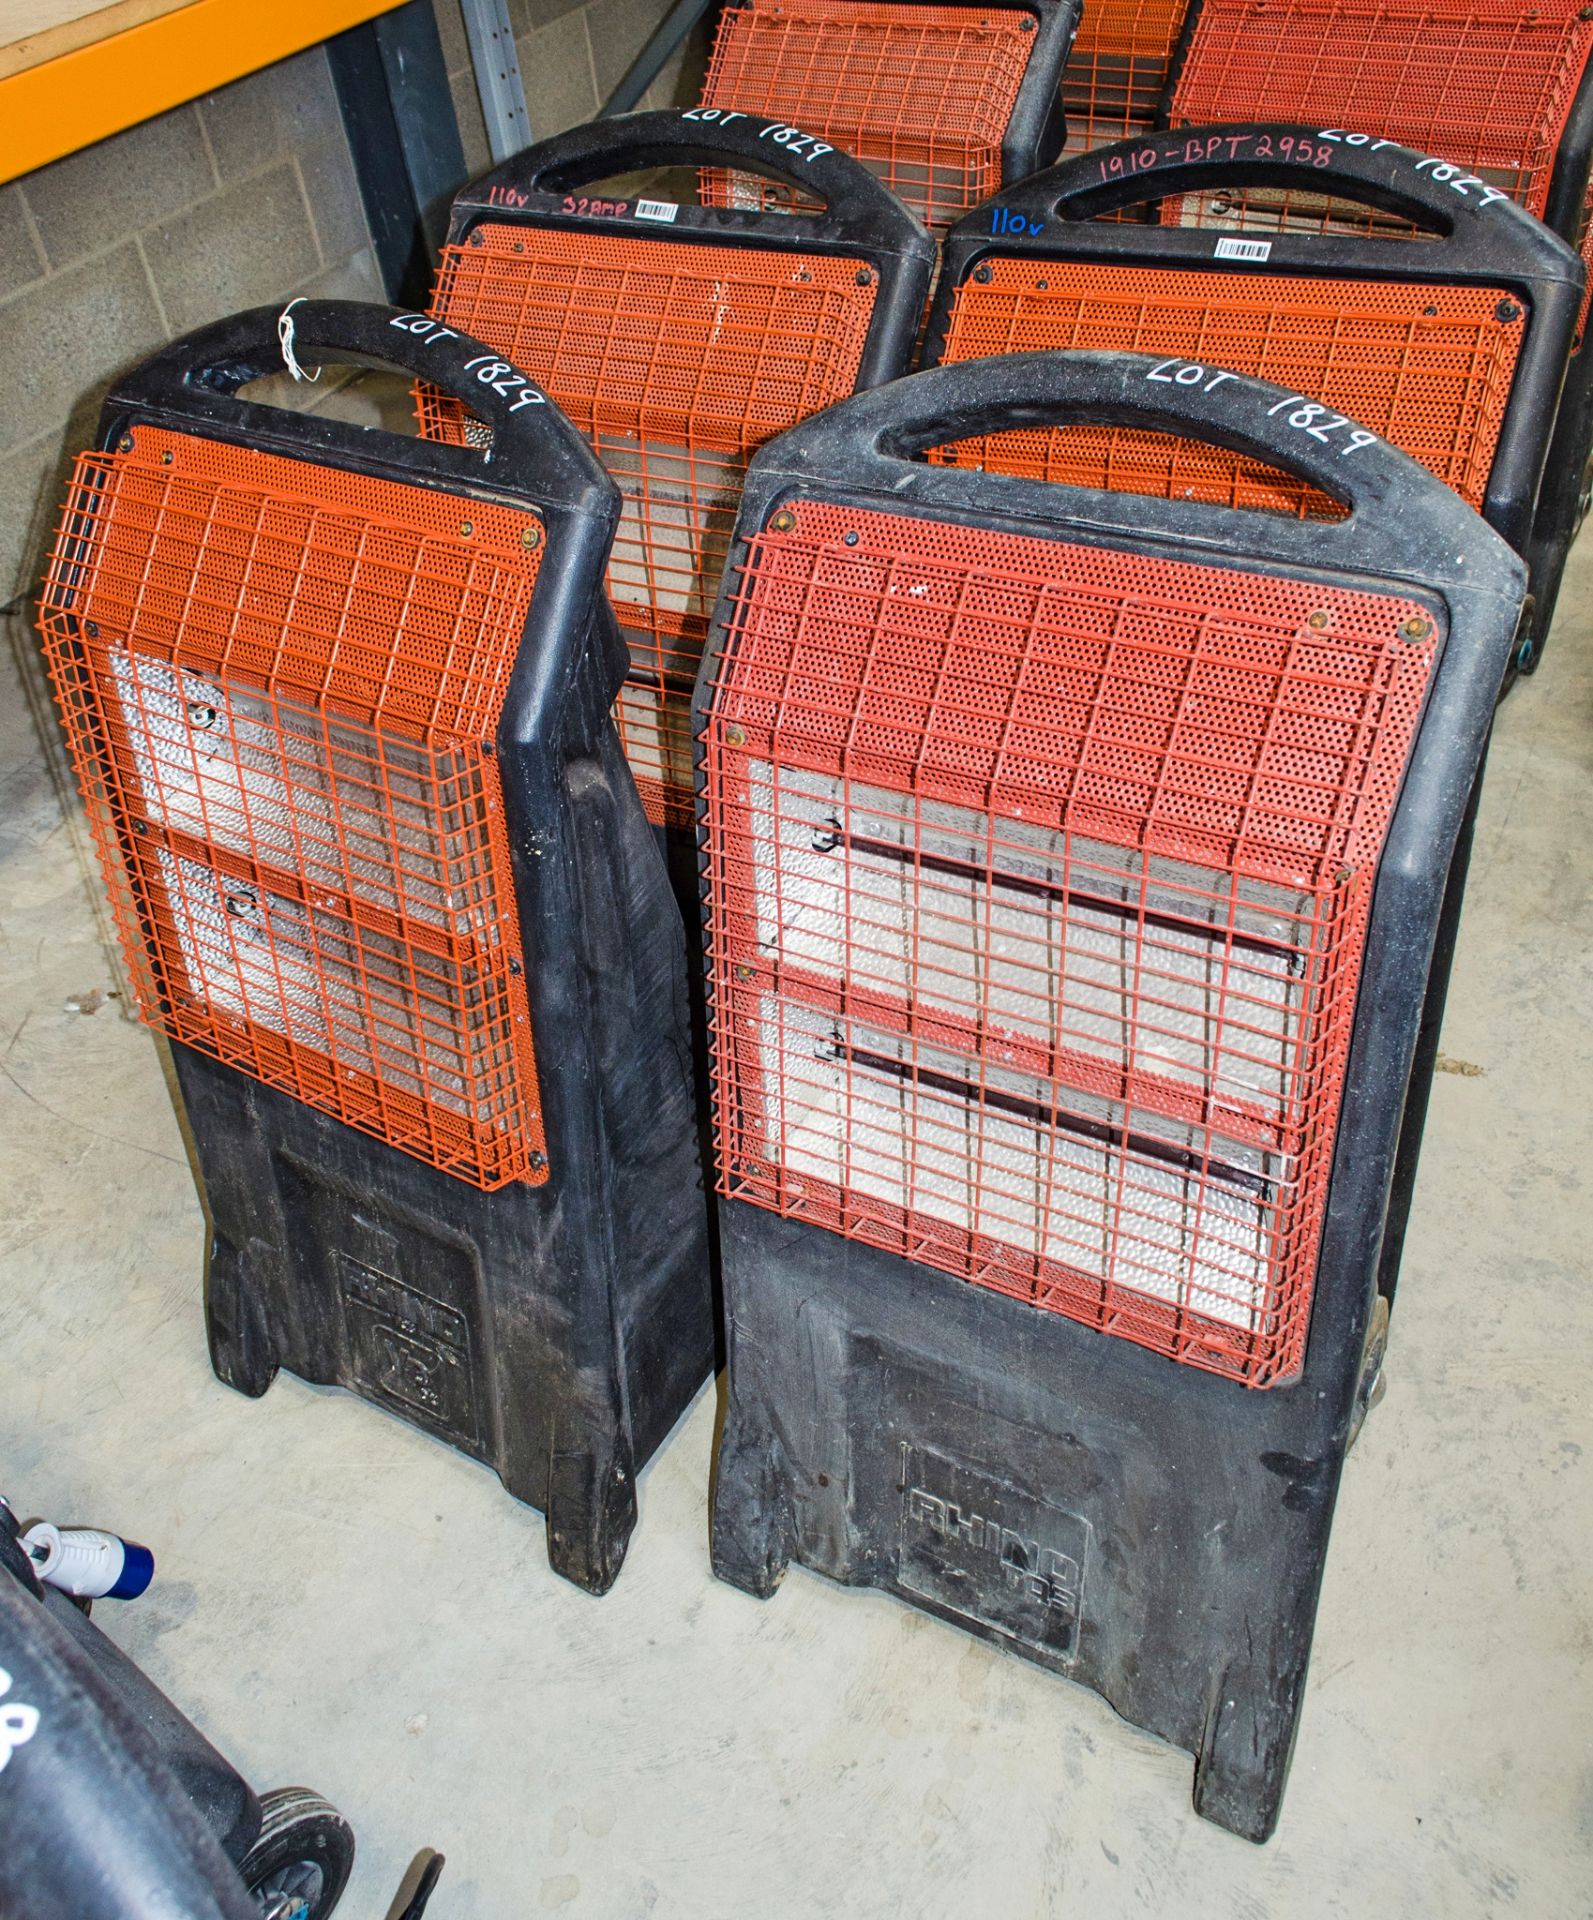 4 - Rhino TQ3 infrared heaters